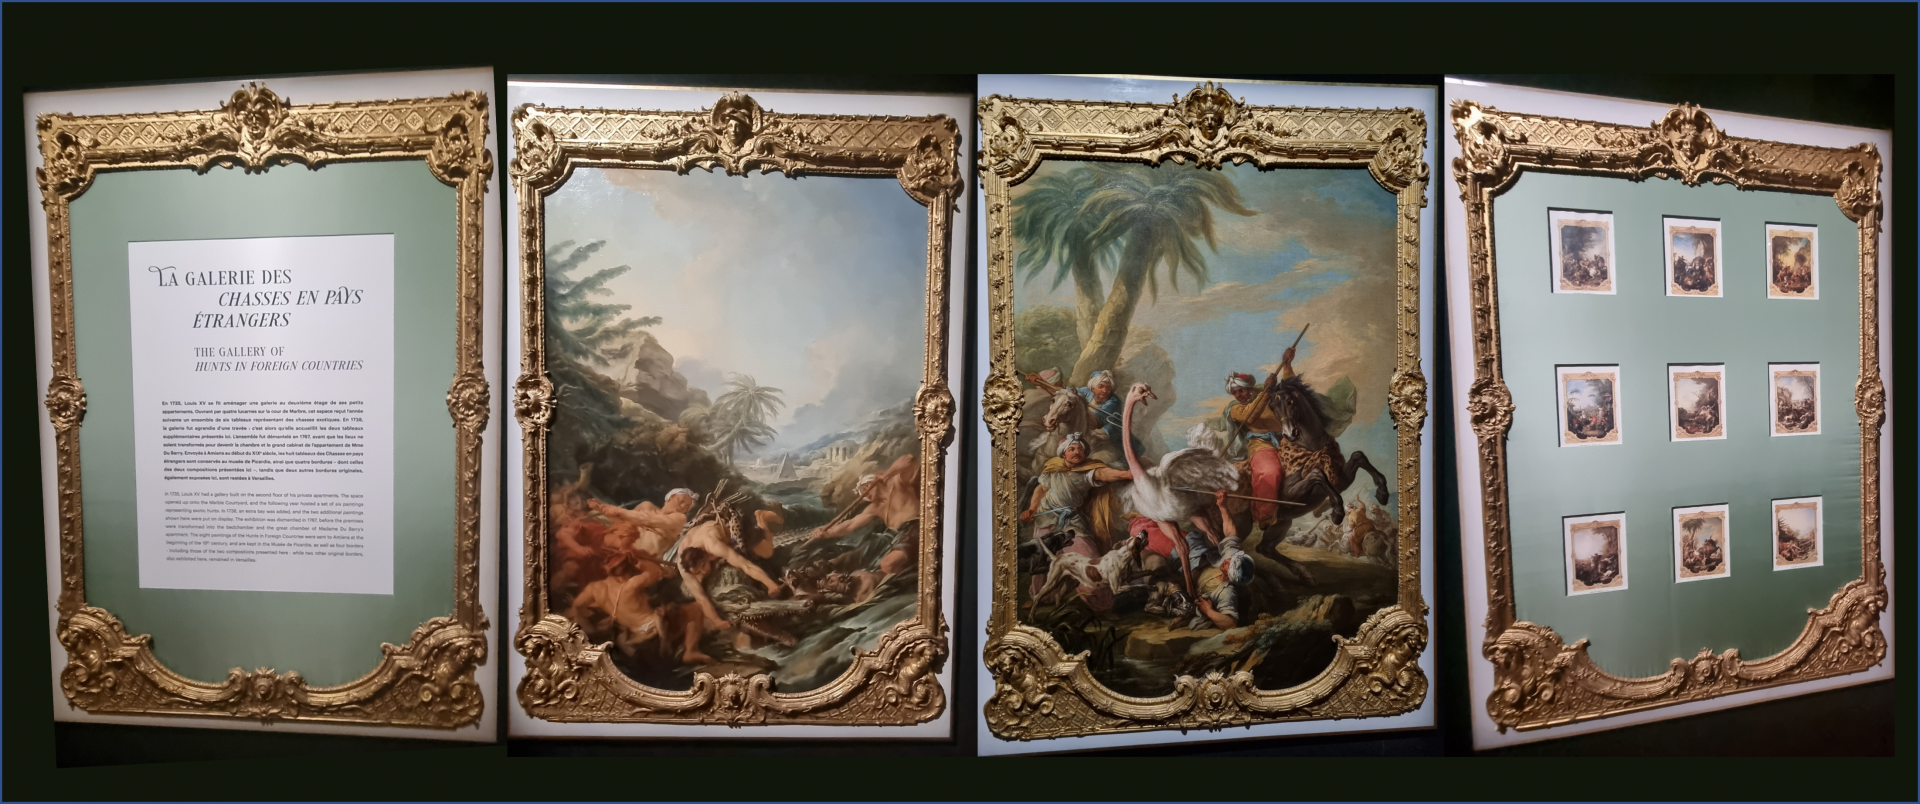 Galerie de 4 tableaux avec une bordure dorée représentant des chasses exotiques (autruches, crocodiles, ...)